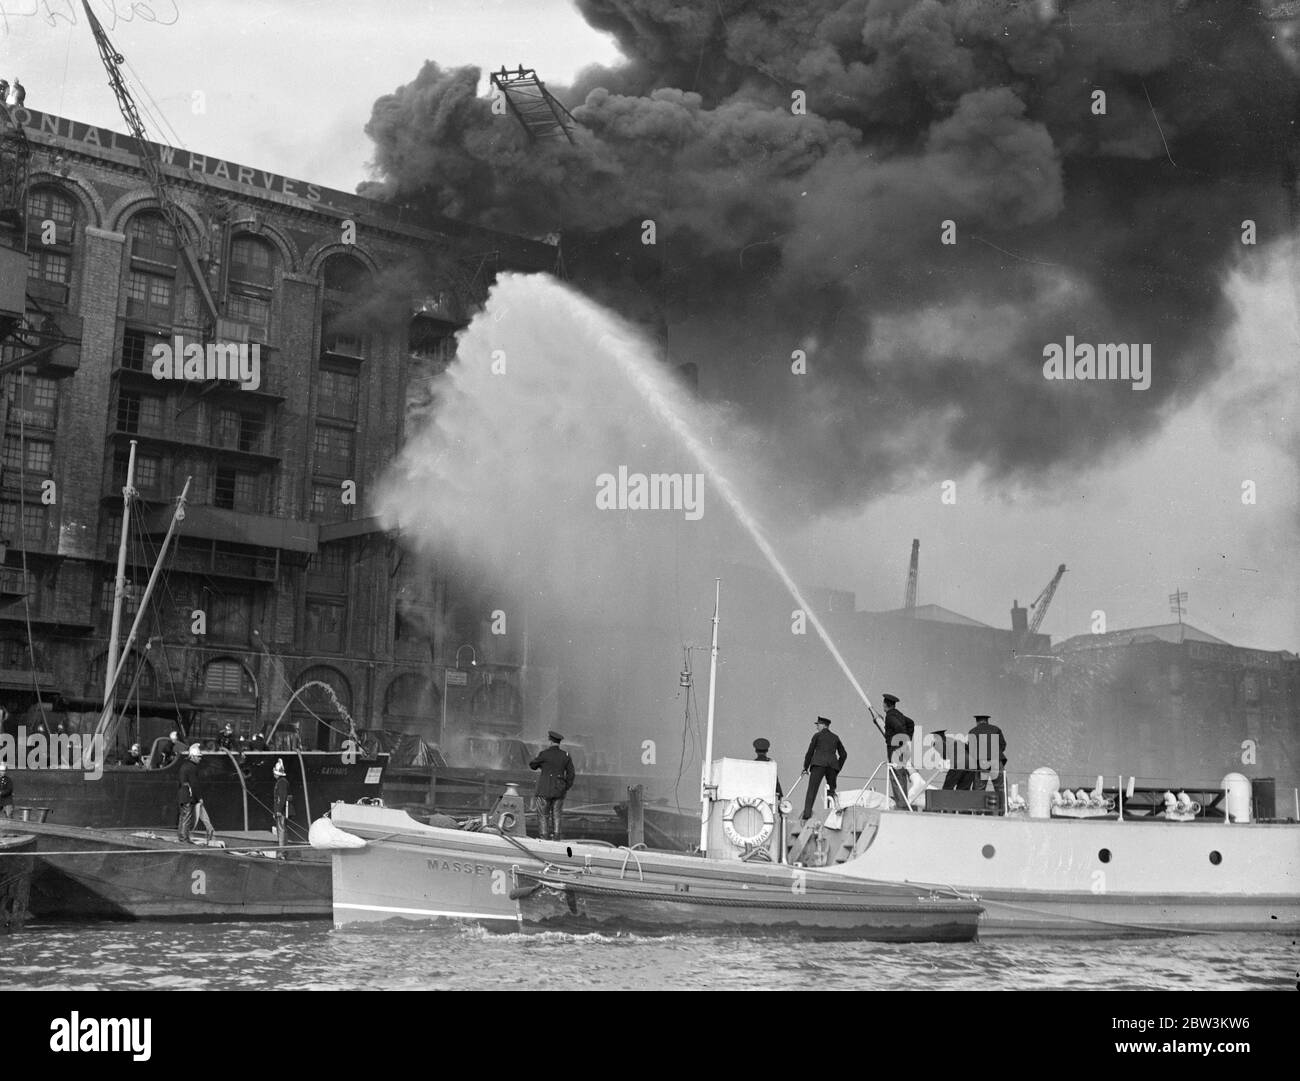 Les flotteurs de feu combattent le grand entrepôt de thé, qui menace le dockland de Londres . Combattre les flammes du feu flotte sur la Tamise . 25 septembre 1935 Banque D'Images